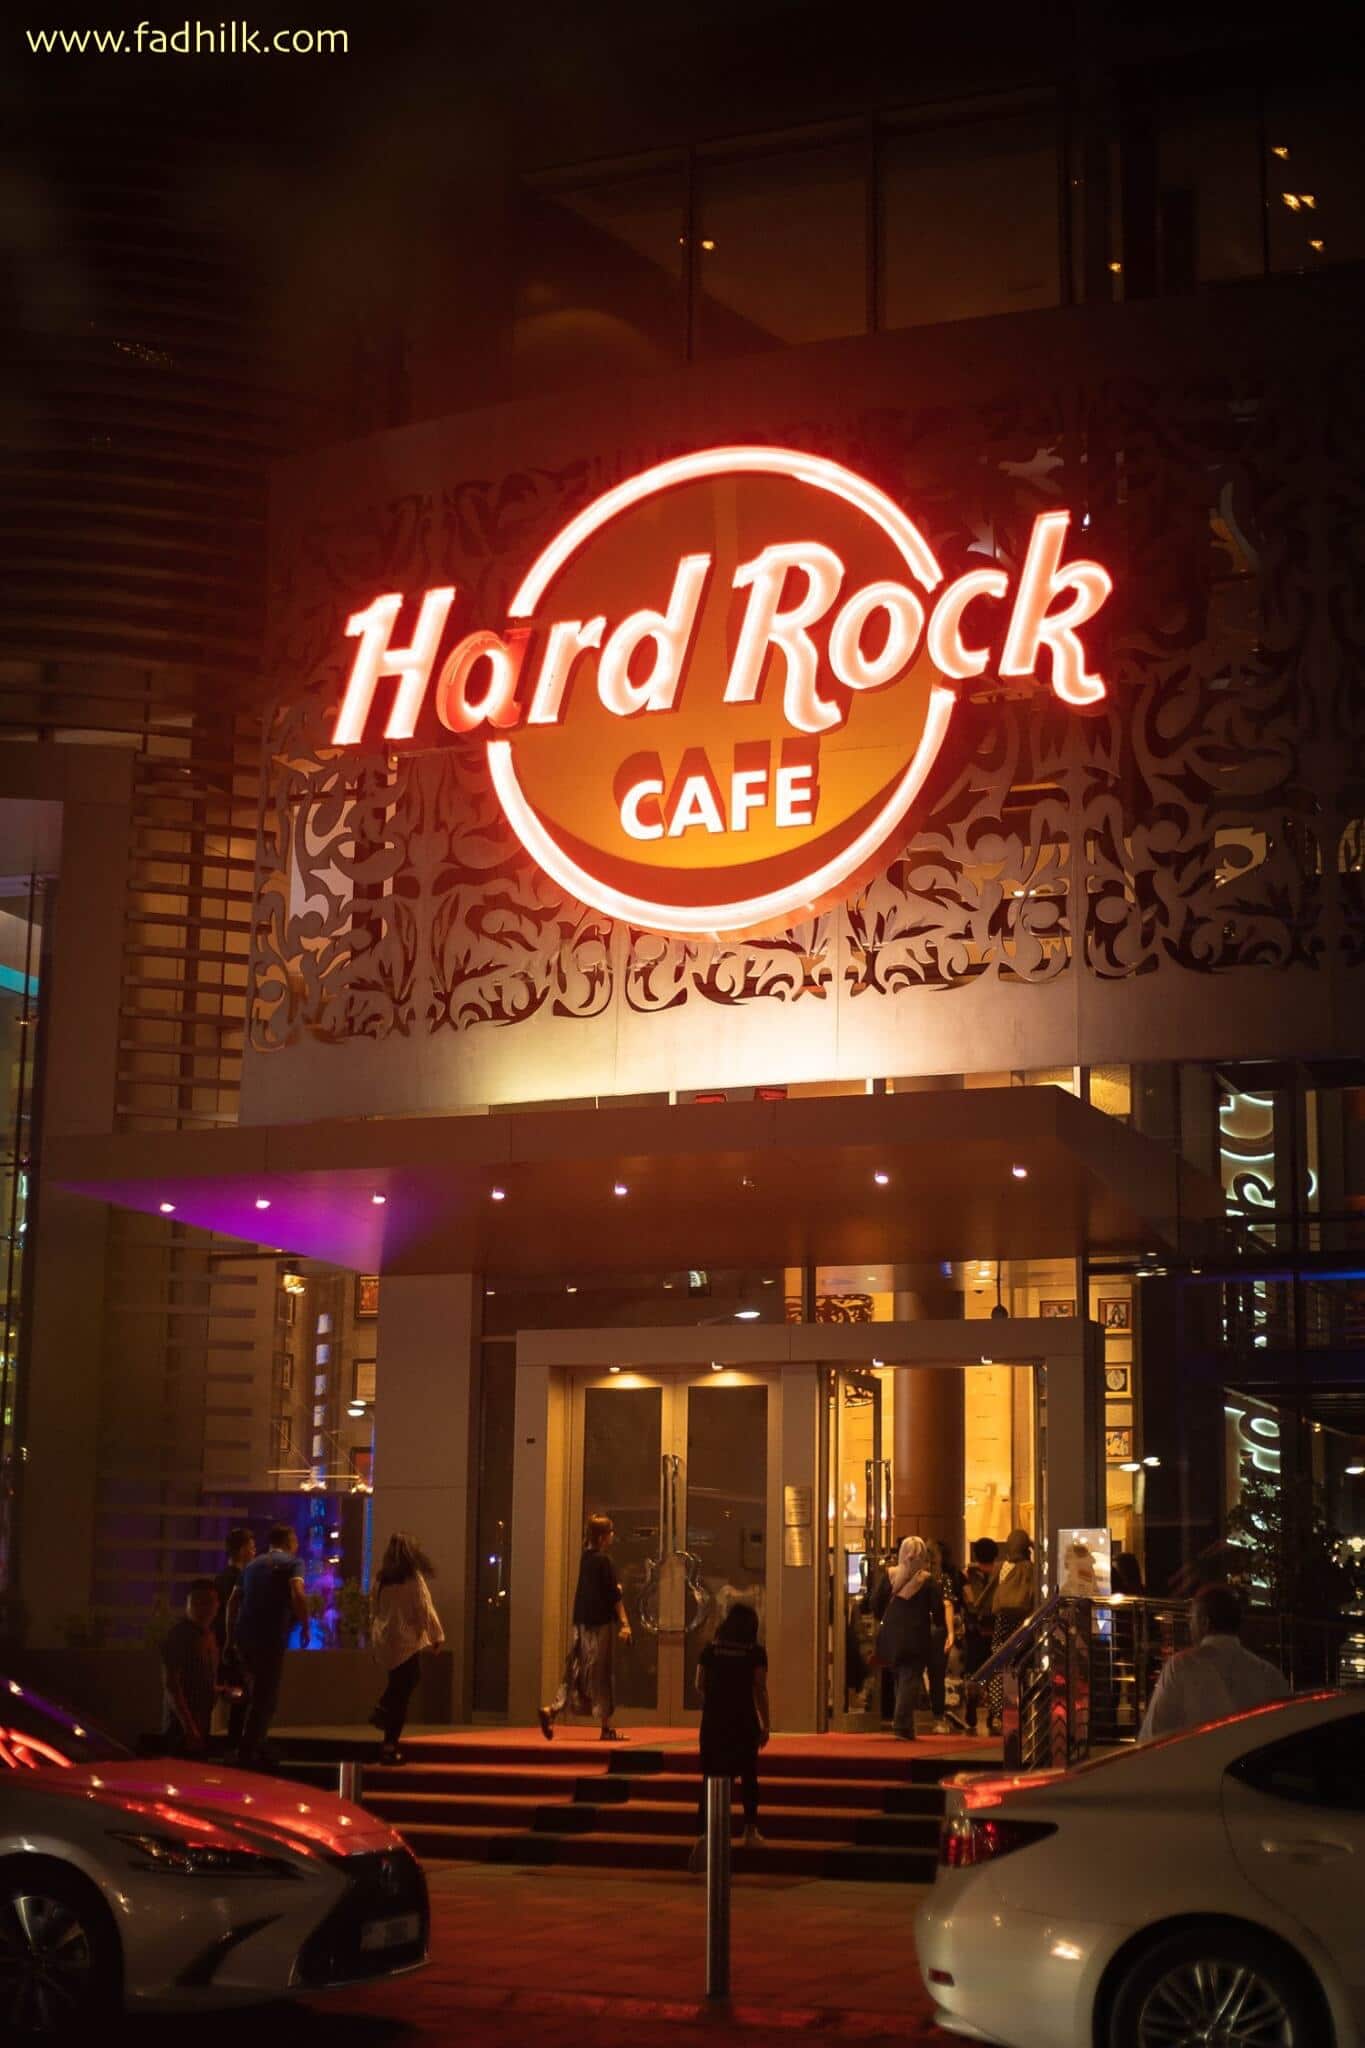 Bercuti ke dubai - hard rock cafe 9